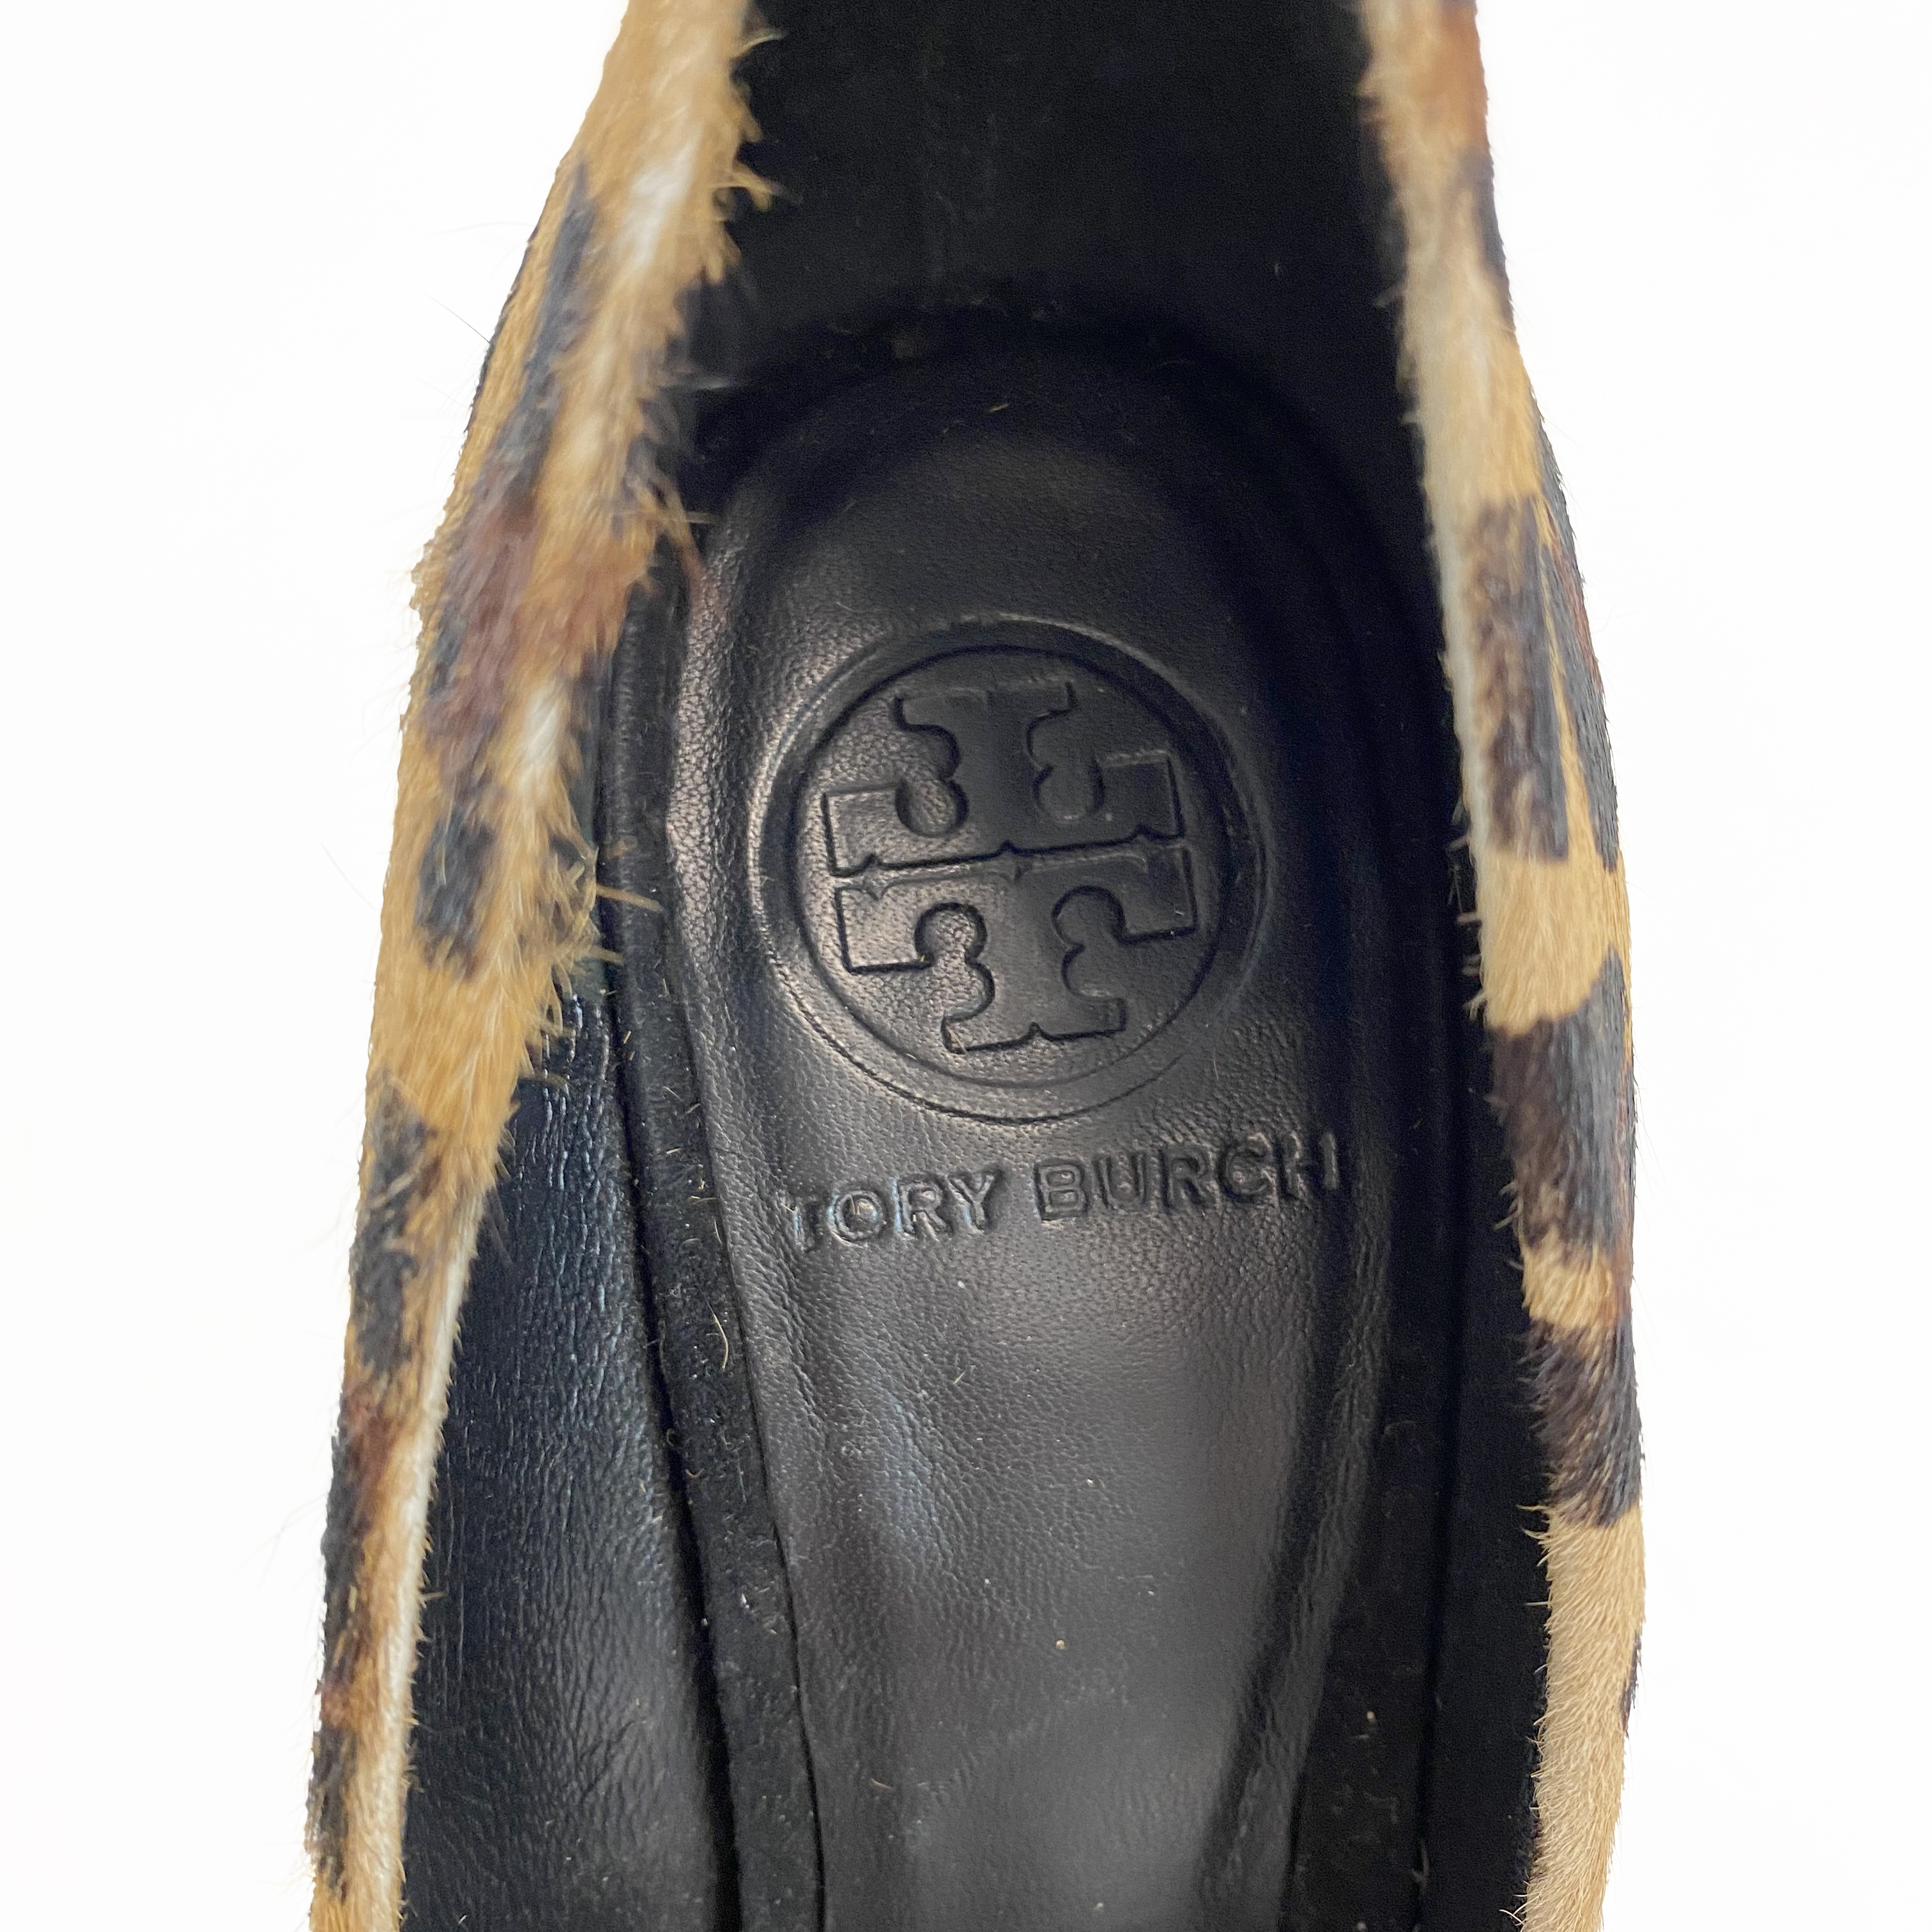 Tory Burch Leopard-print Calf-Skin Stiletto Pumps